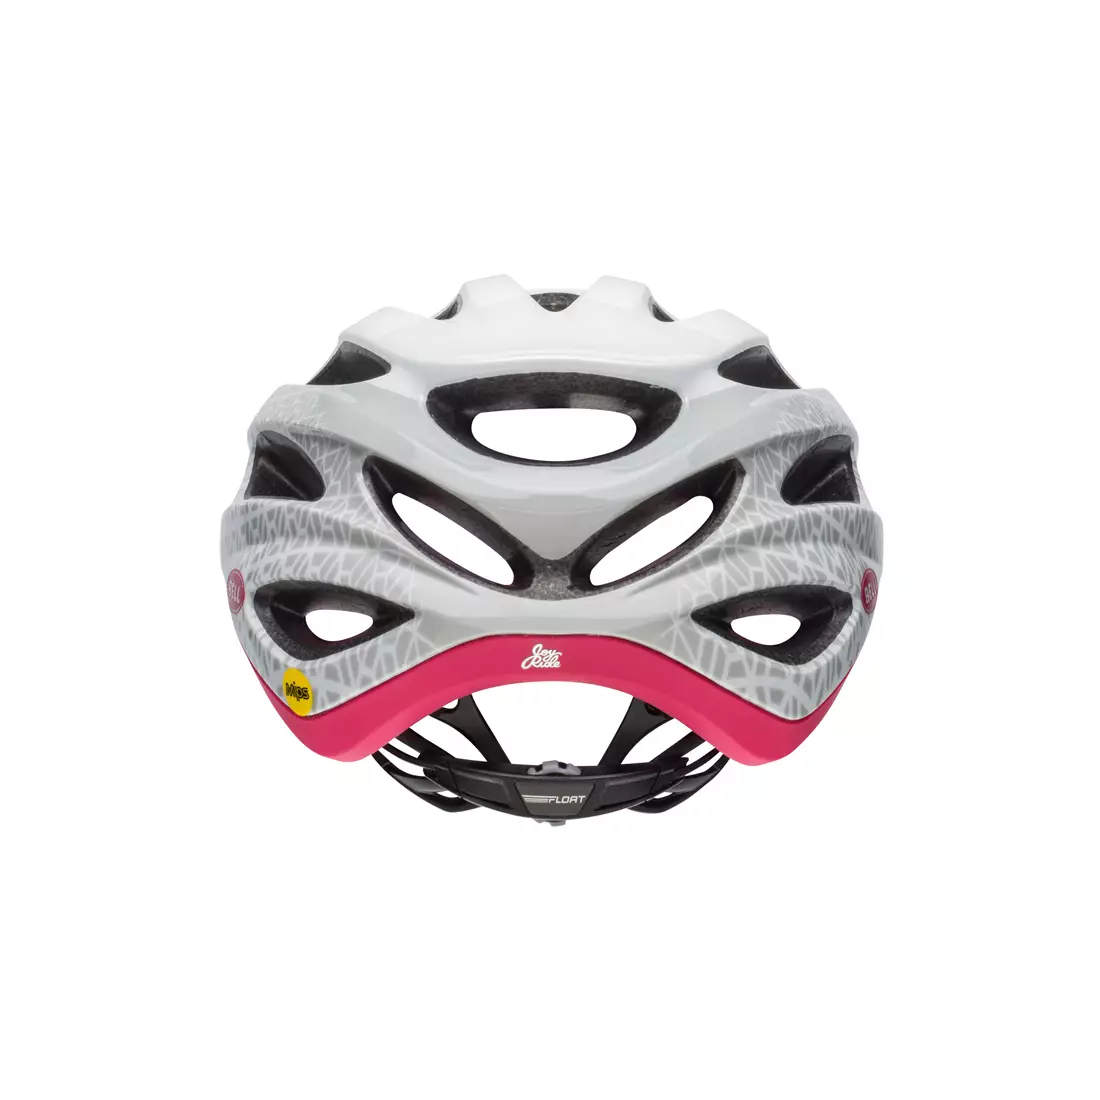 BELL NALA JOY RIDE MIPS BEL-7088612 dámská cyklistická helma matná bílá třešeň rozp.